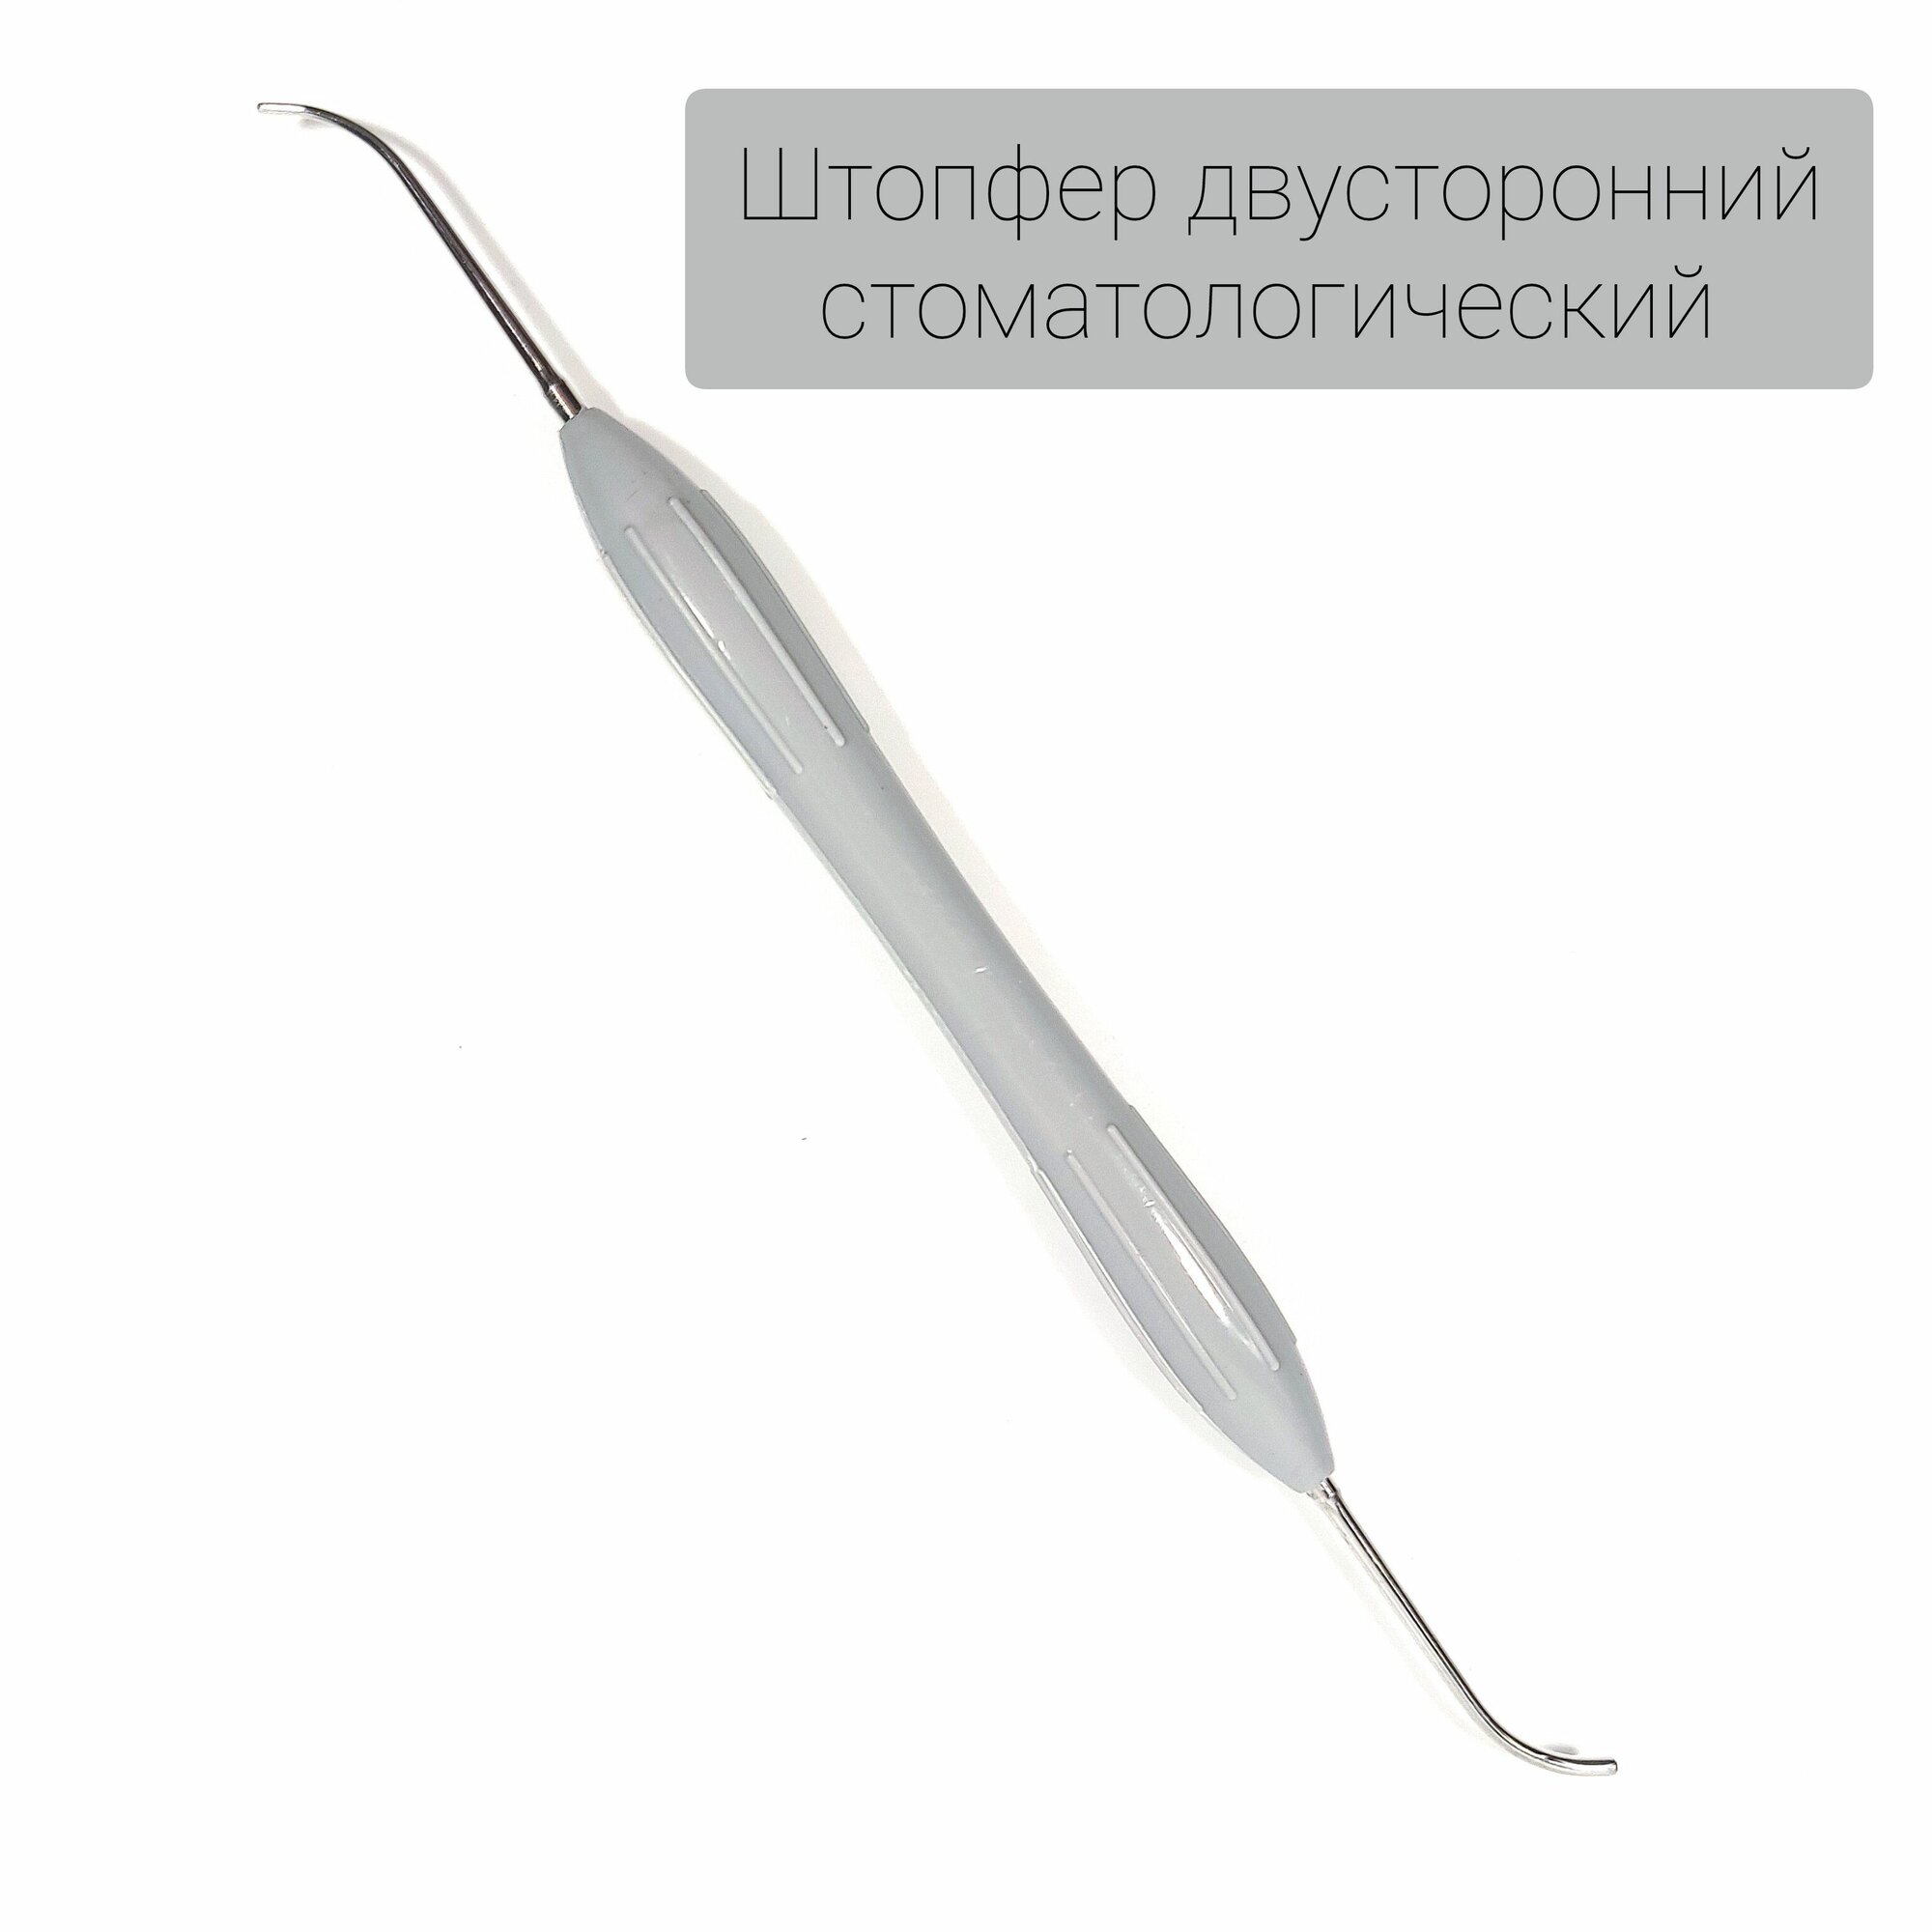 Гладилка стоматологическая штопфер двусторонний серый